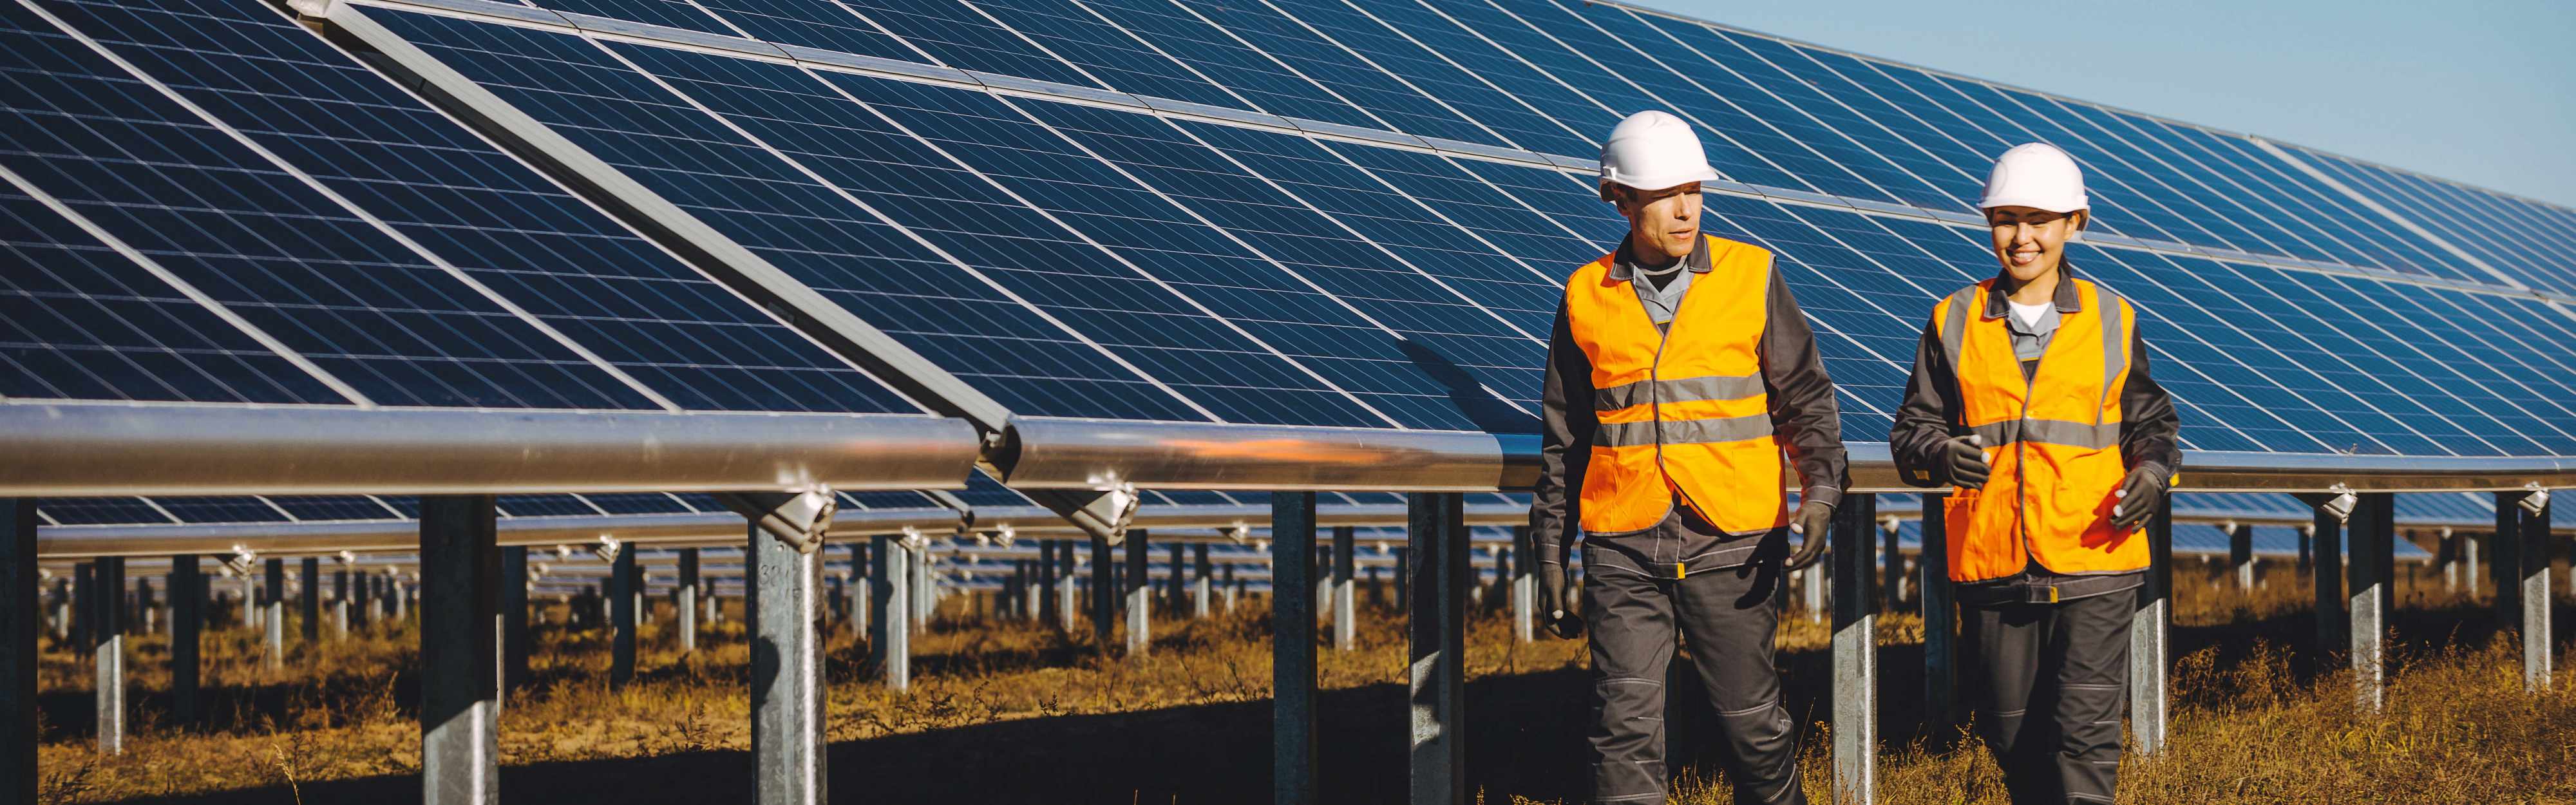 Techniker und Technikerin vor einer Photovoltaik-Anlage